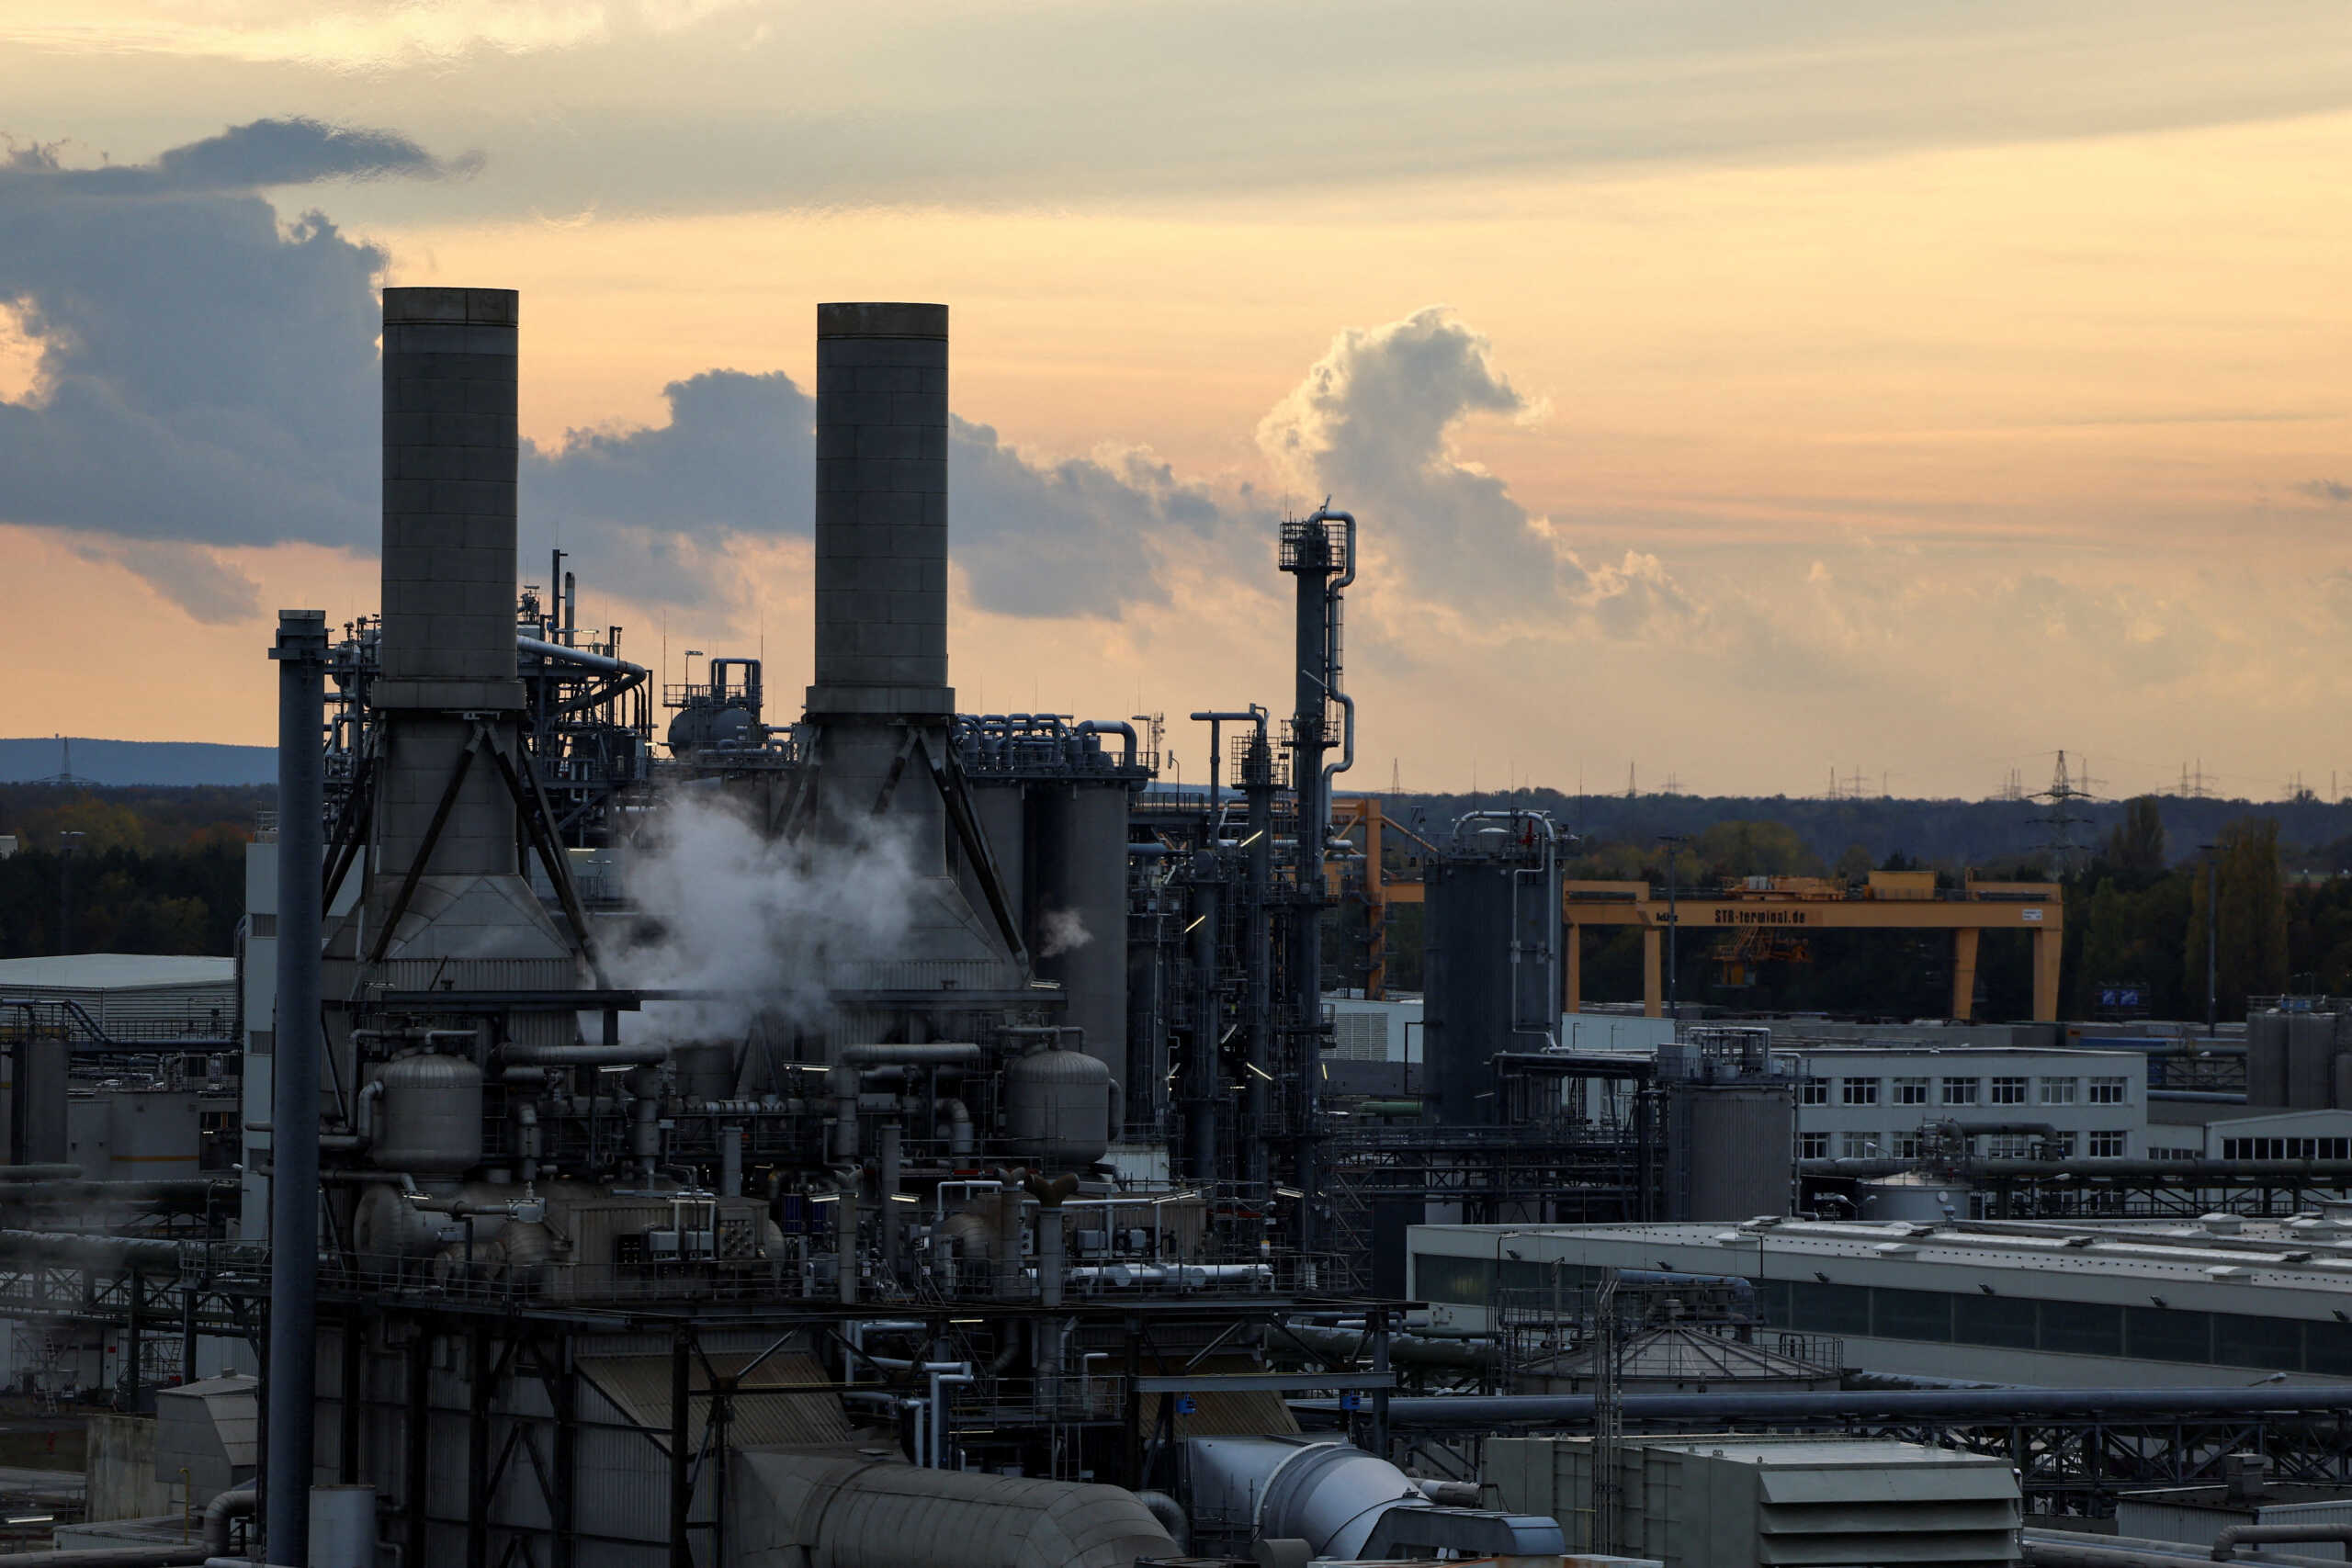 Γερμανία: Έκρηξη σε εργοστάσιο χημικών της BASF με 14 τραυματίες – Εντοπίστηκαν αυξημένα επίπεδα υδρογονανθράκων